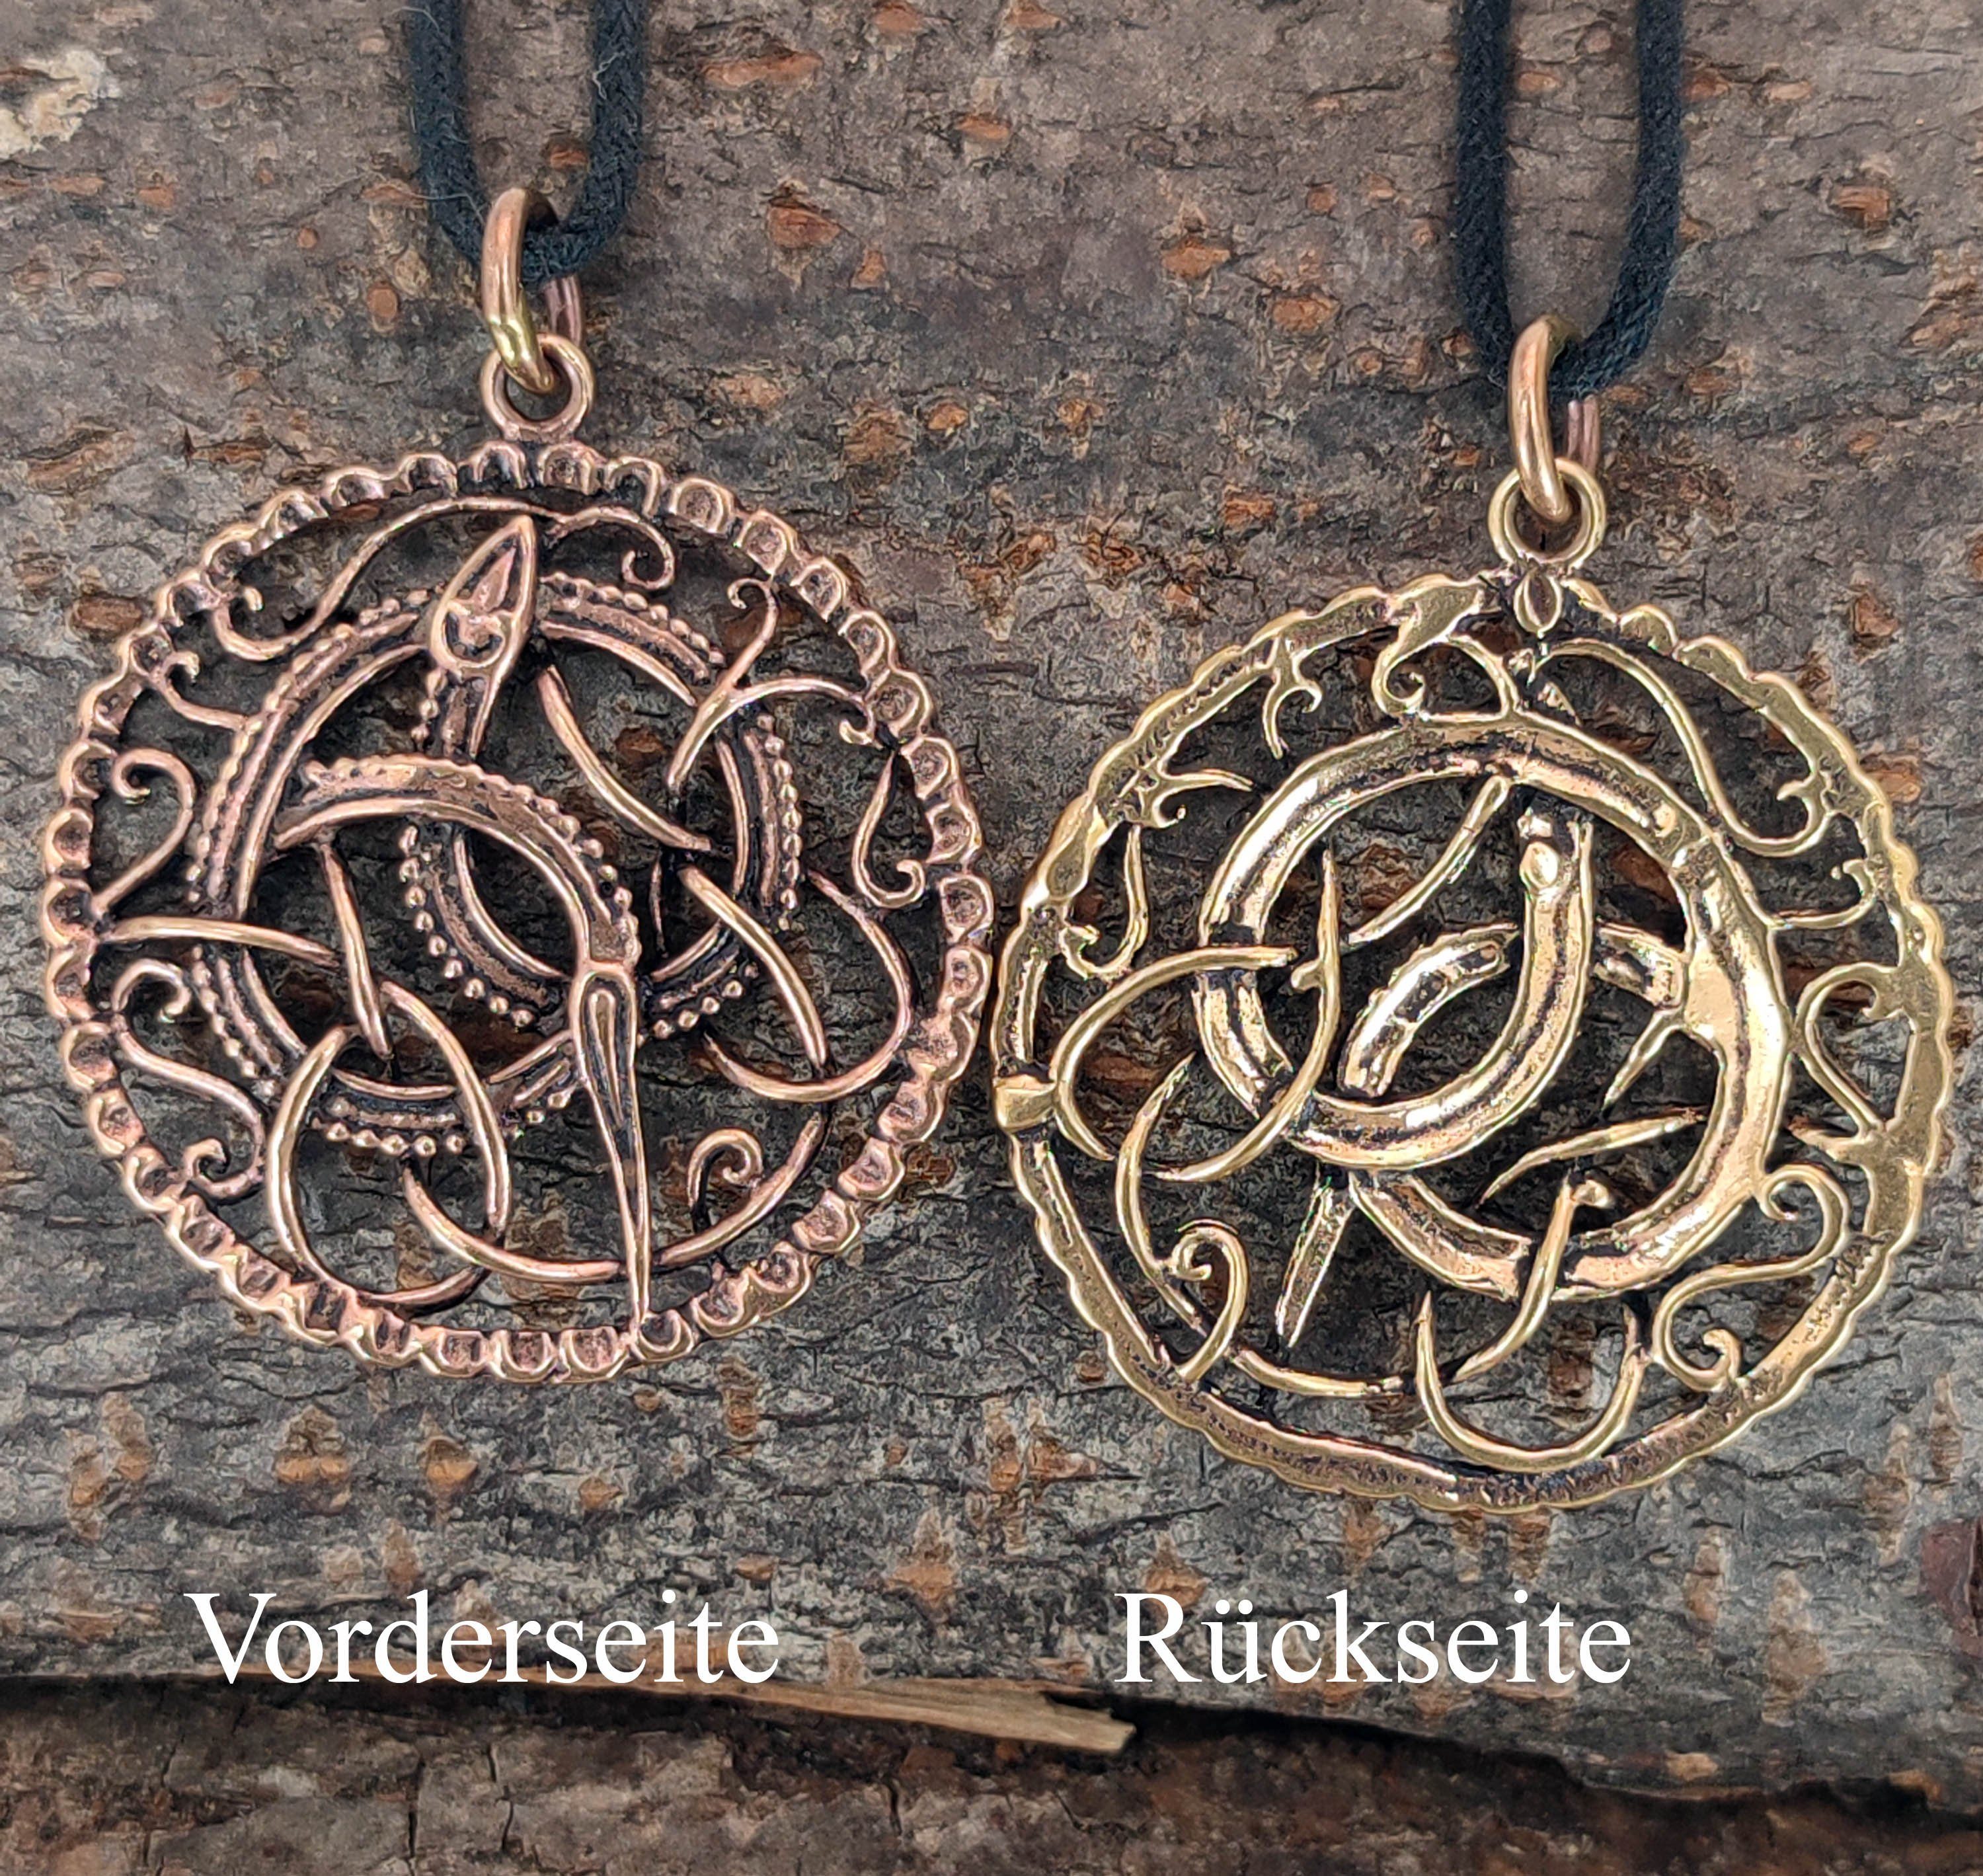 Midgard Kiss Midgardschlange Bronze großer Schlangen Schlange Amulett Anhänger Leather of Kettenanhänger